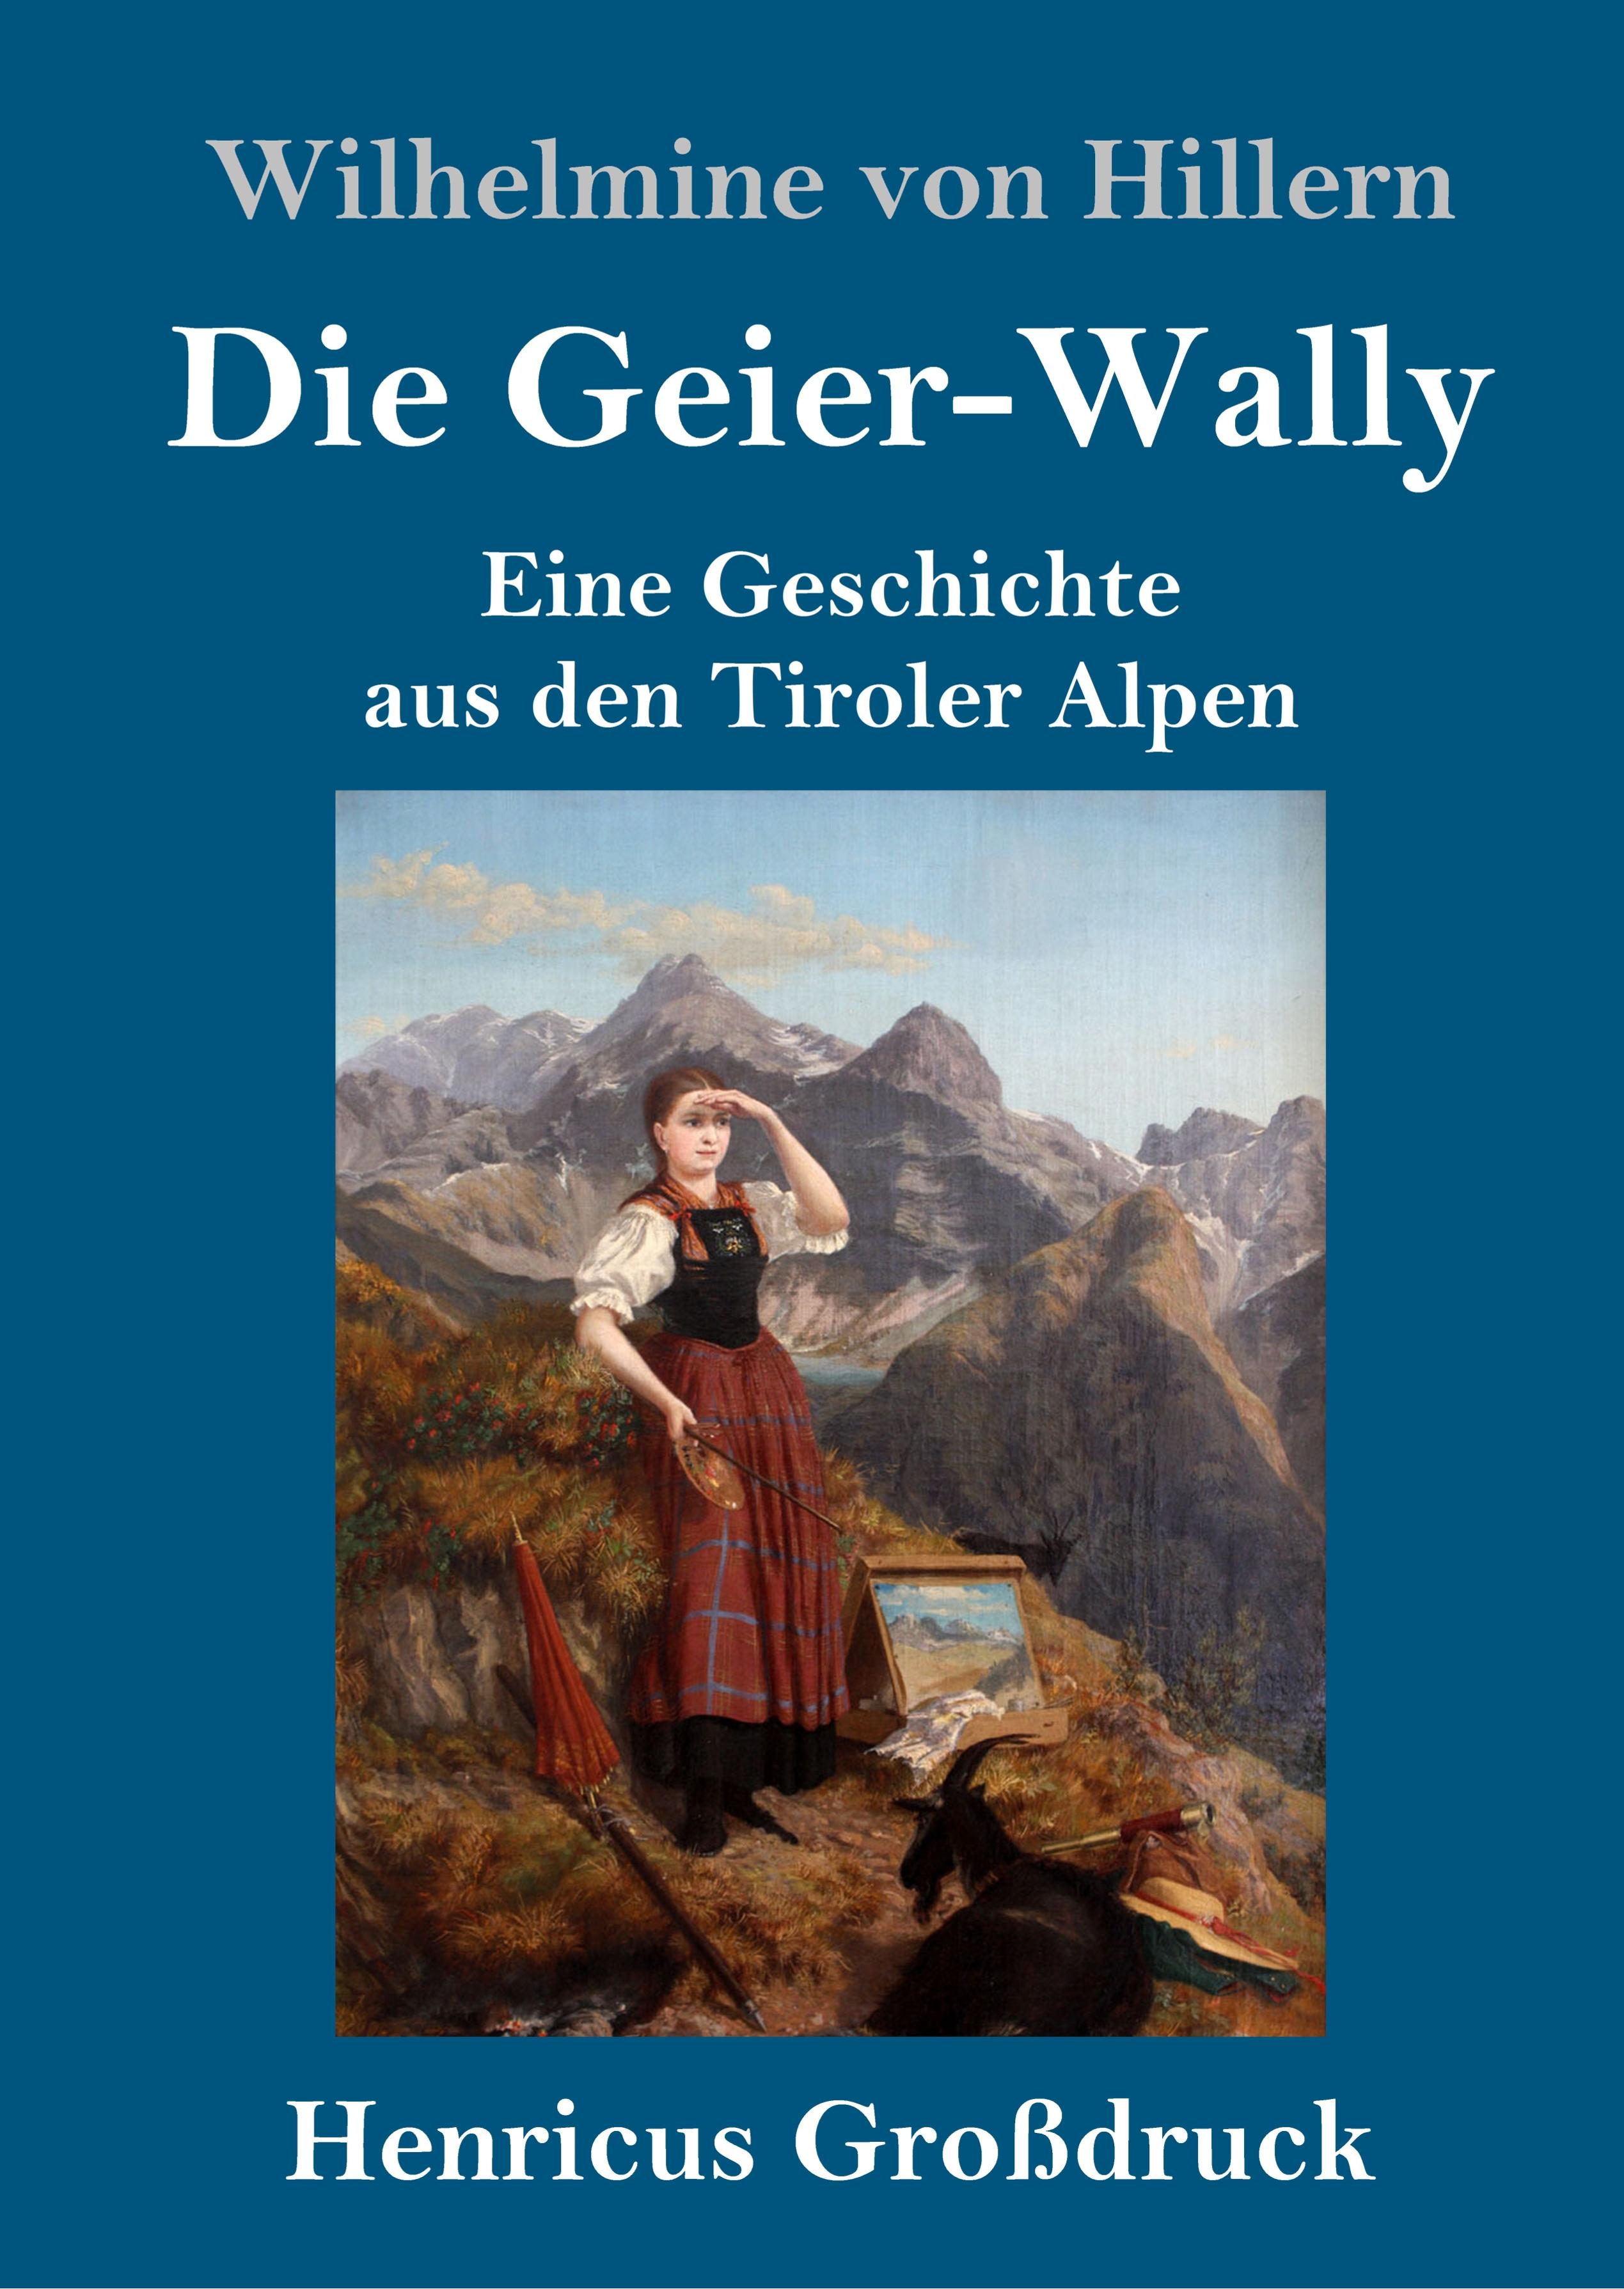 Die Geier-Wally (Grossdruck) - Hillern, Wilhelmine Von